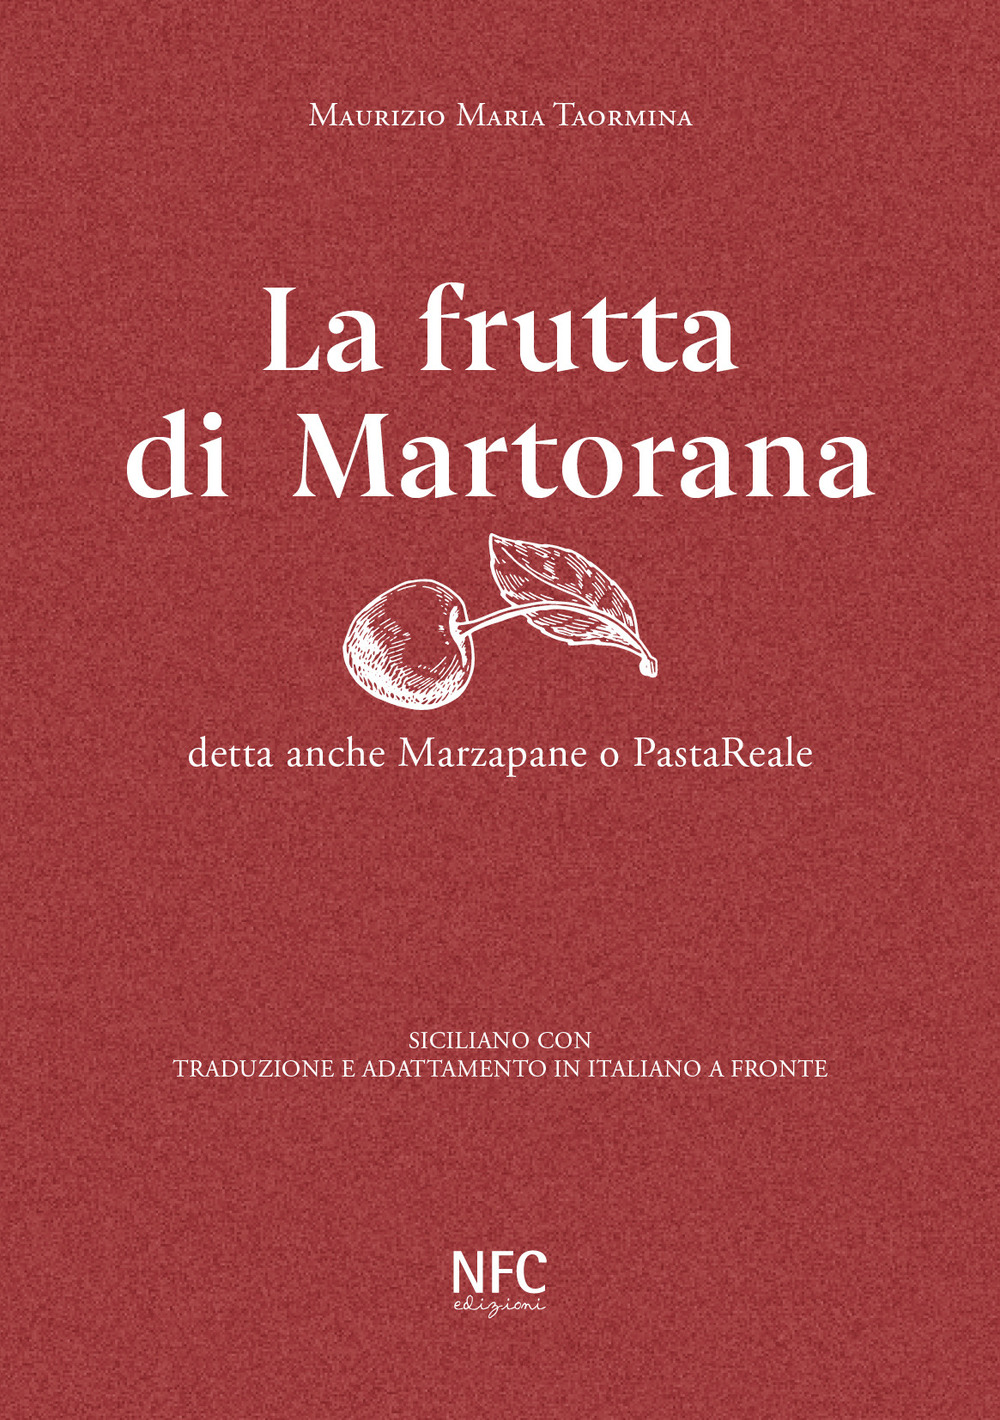 La frutta di Martorana detta anche marzapane o pastareale. Siciliano con traduzione e adattamento in italiano a fronte